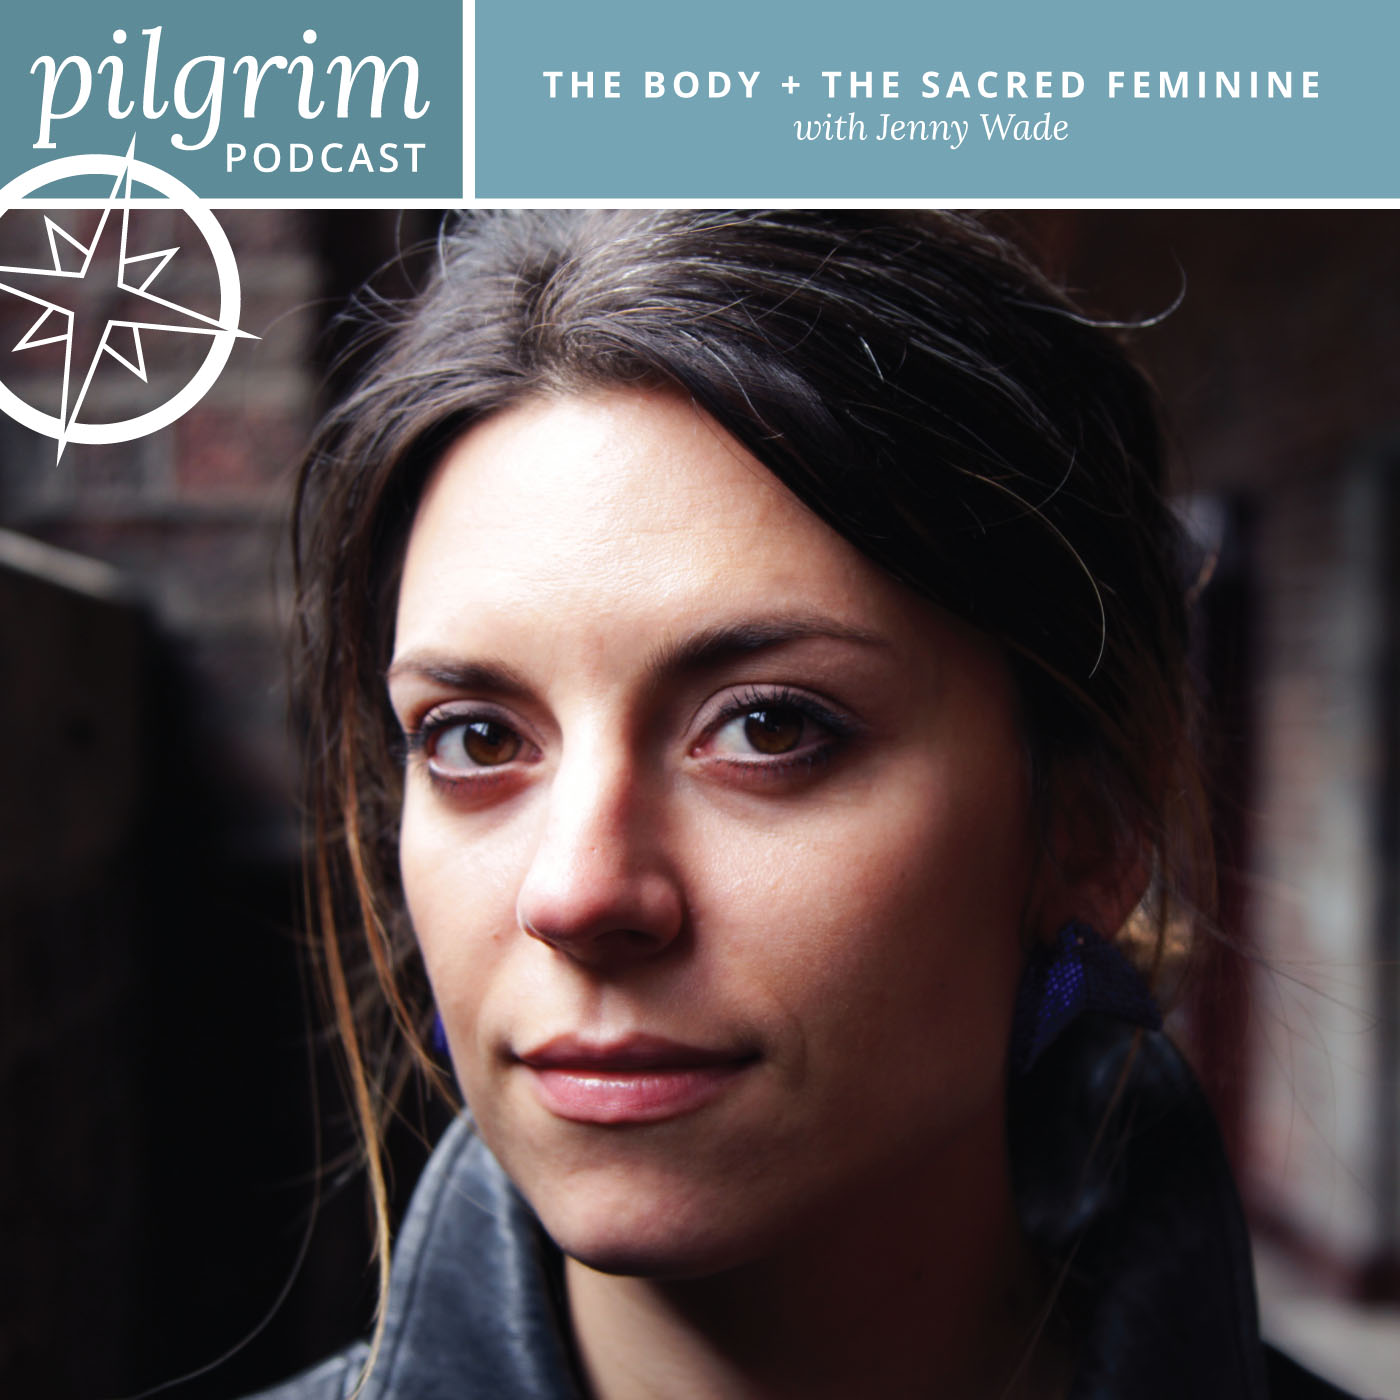 S1:E3 | The Body + The Sacred Feminine with Jenny Wade